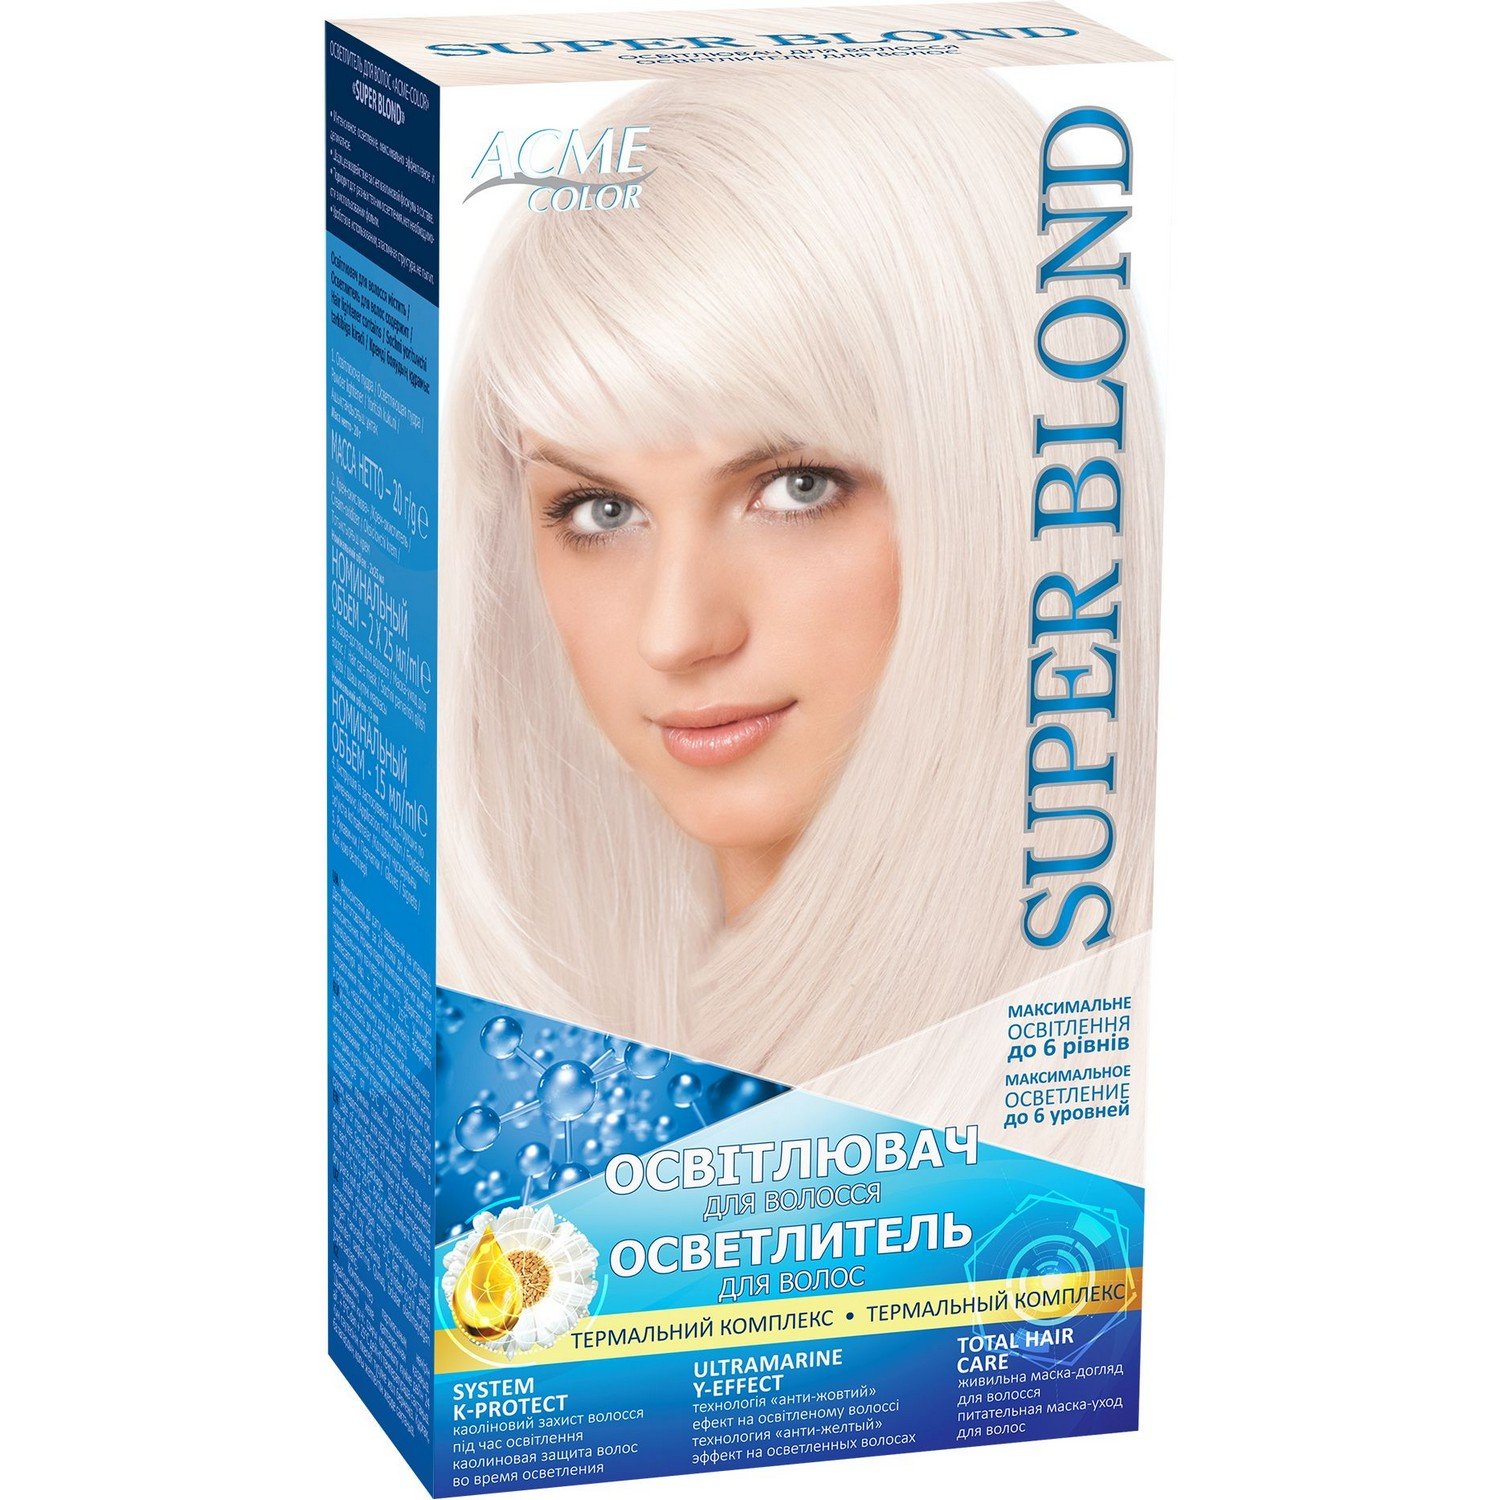 Осветлитель для волос Acme Color Super Blond, 85 г - фото 1